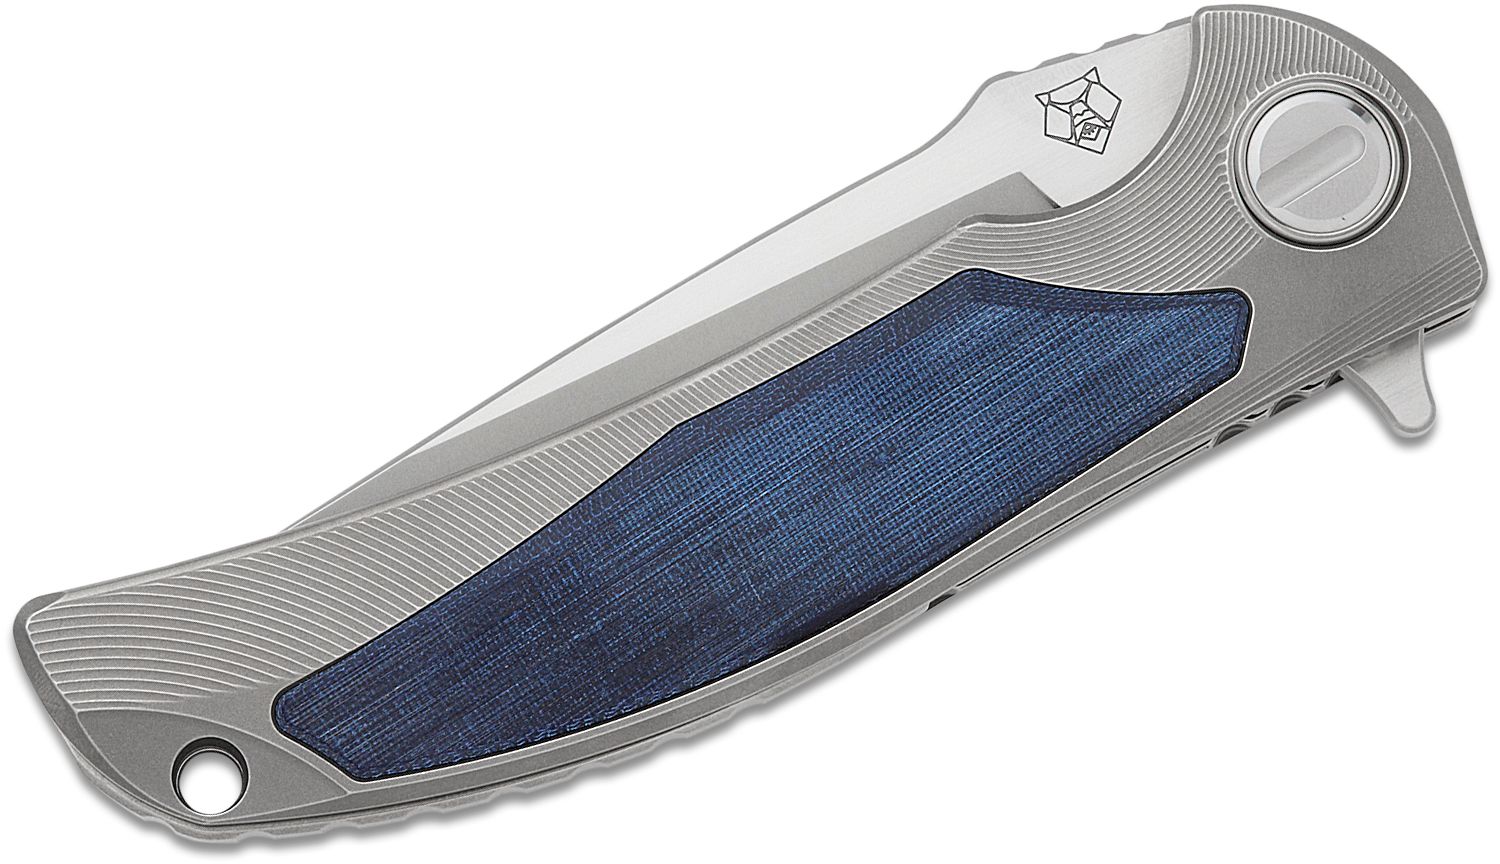 Shirogorov Limited Edition RJ Martin Denim Overkill Flipper Knife 